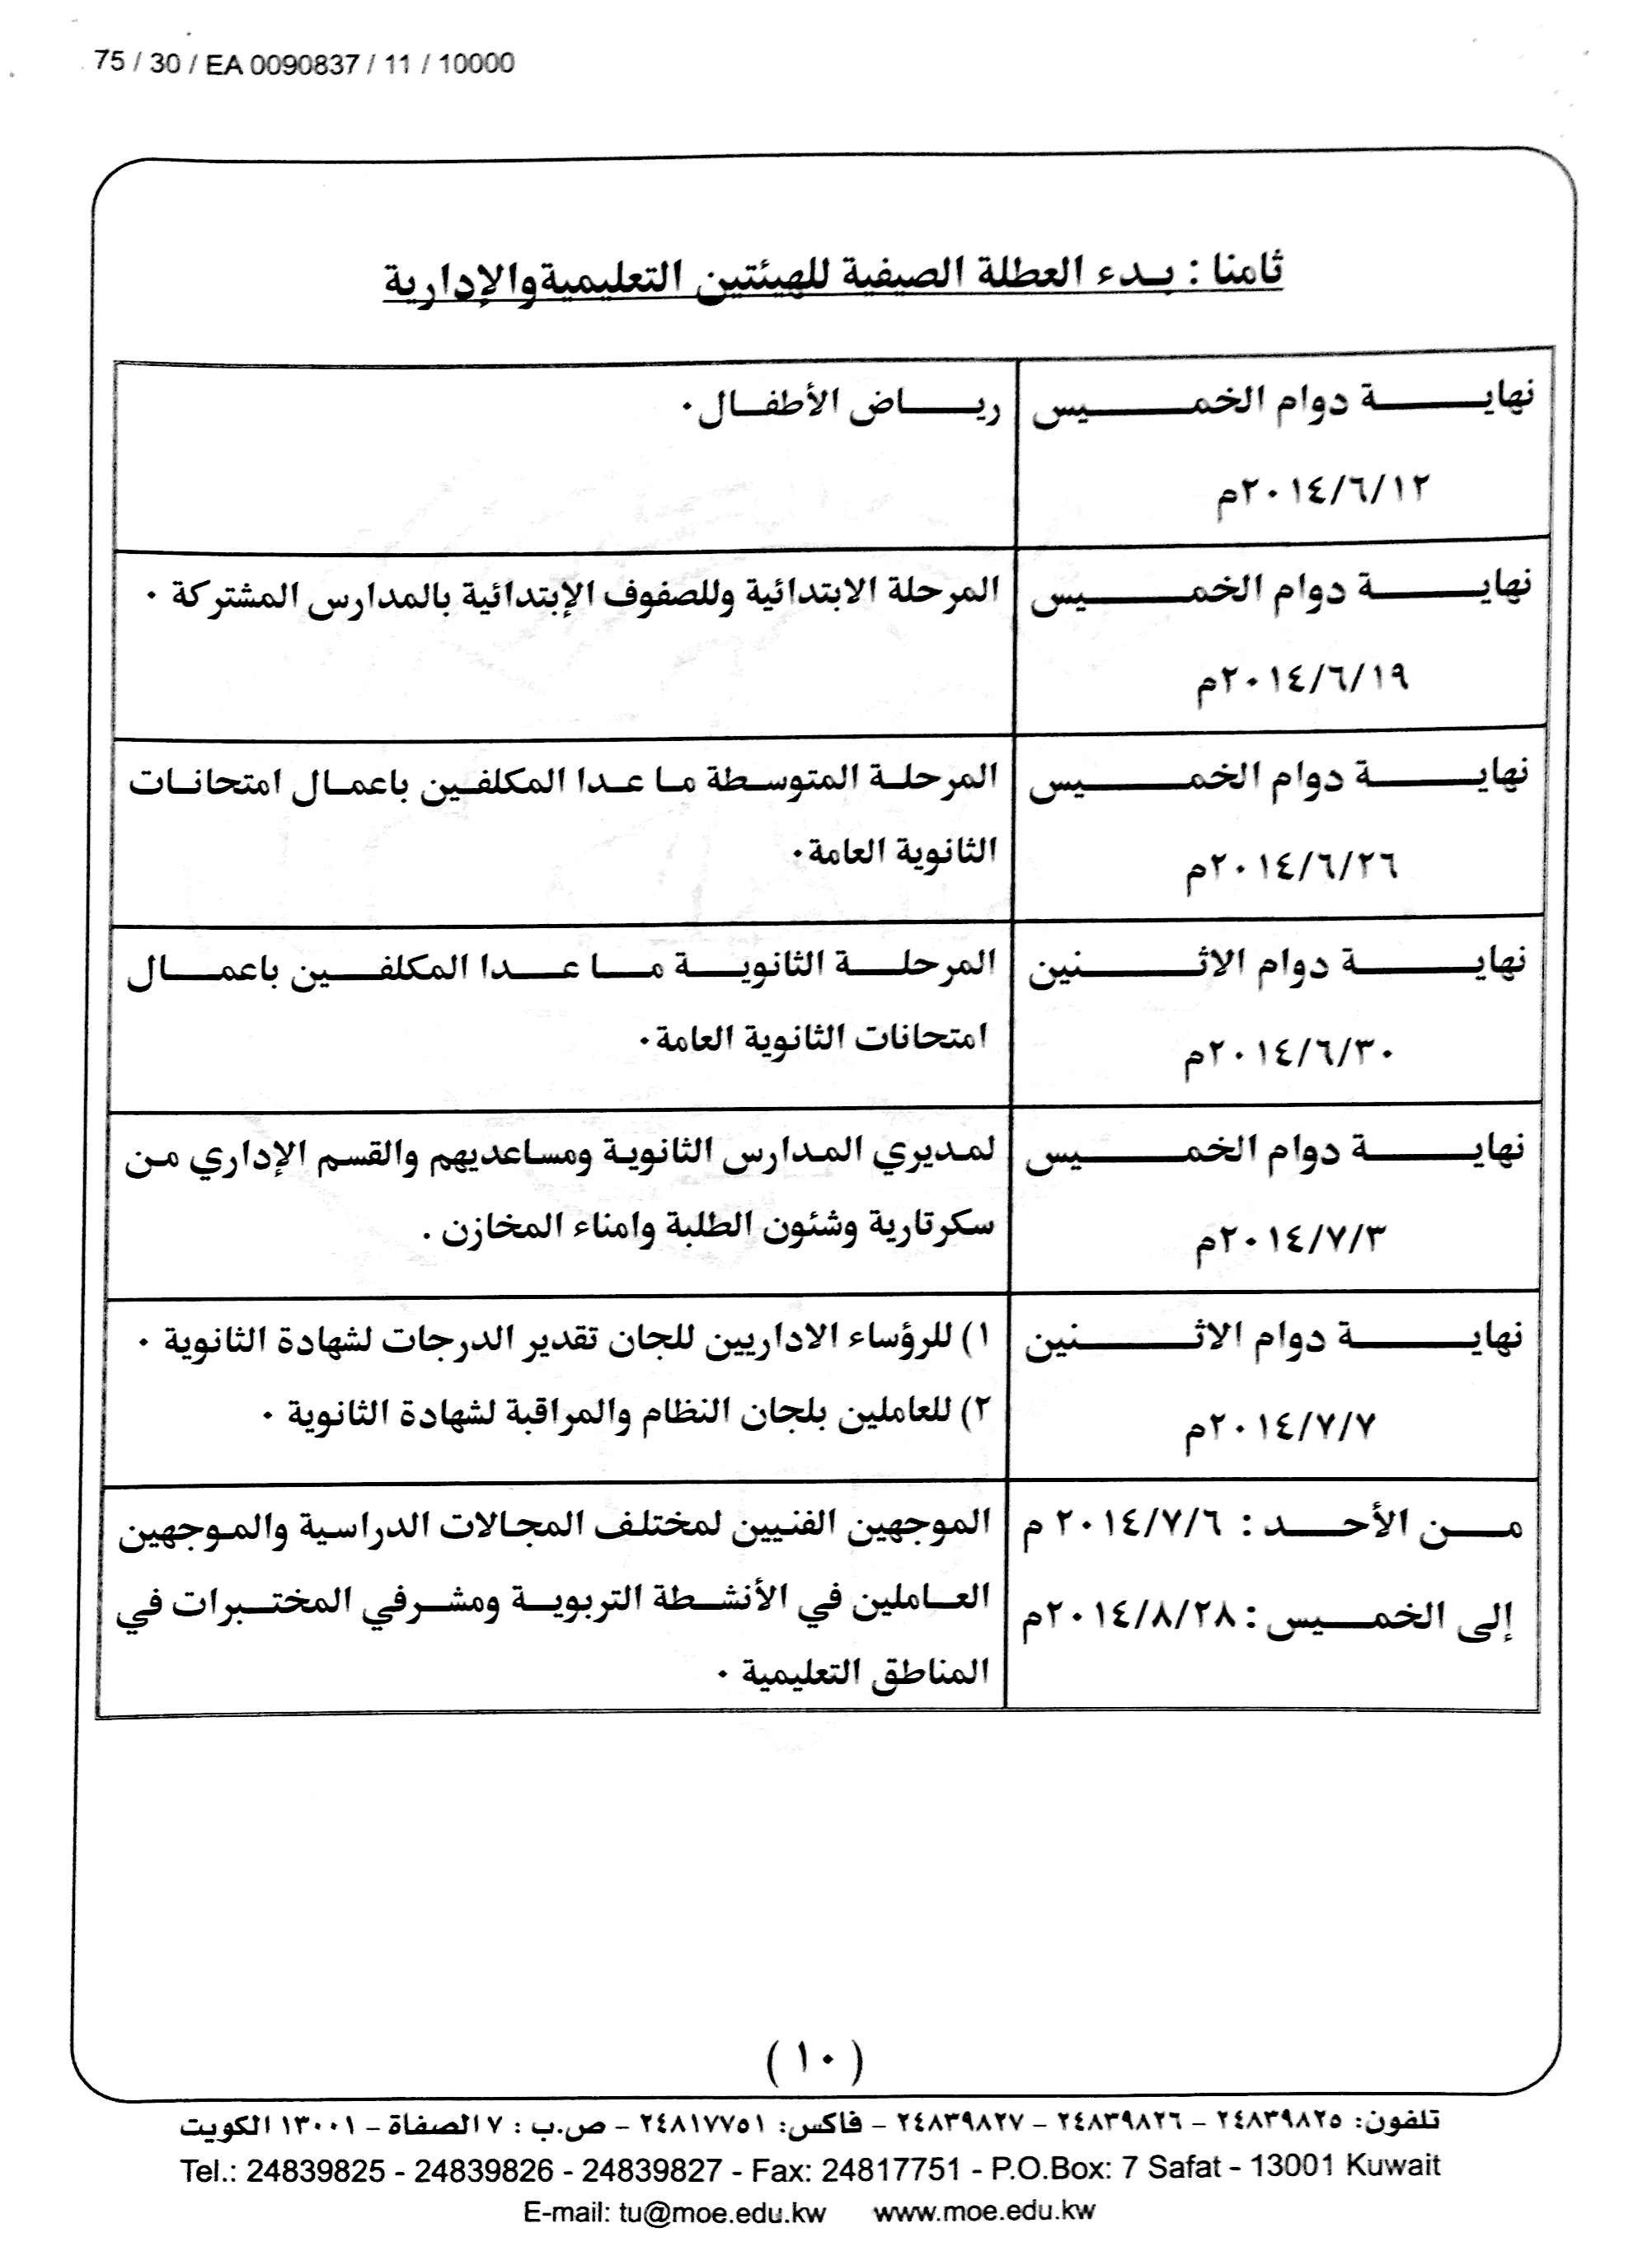 التقويم الدراسى لعام 2013 2014 فى الكويت